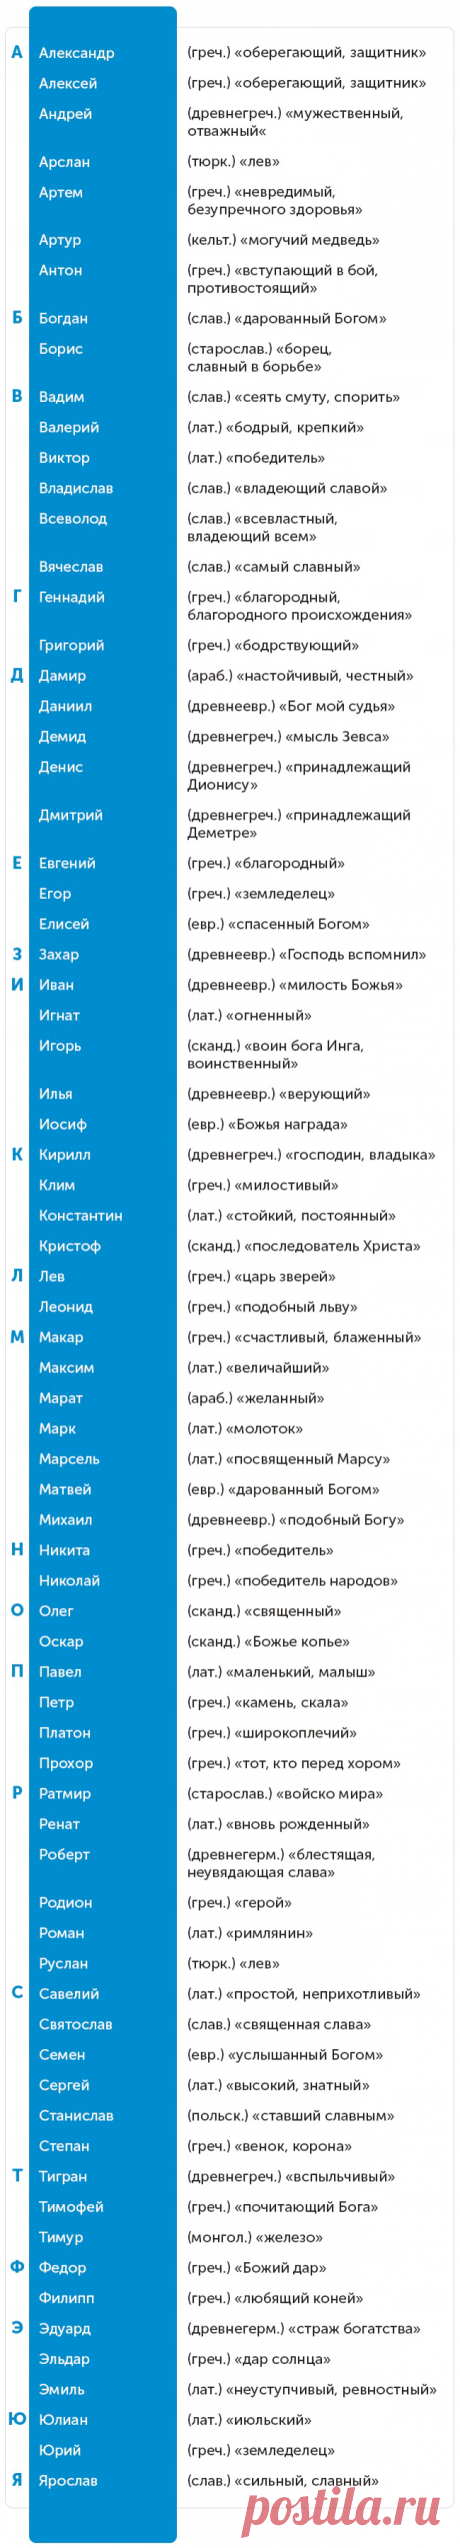 150 популярных имен и их значения — Центр обучения Профессионалы.ru — Профессионалы.ru